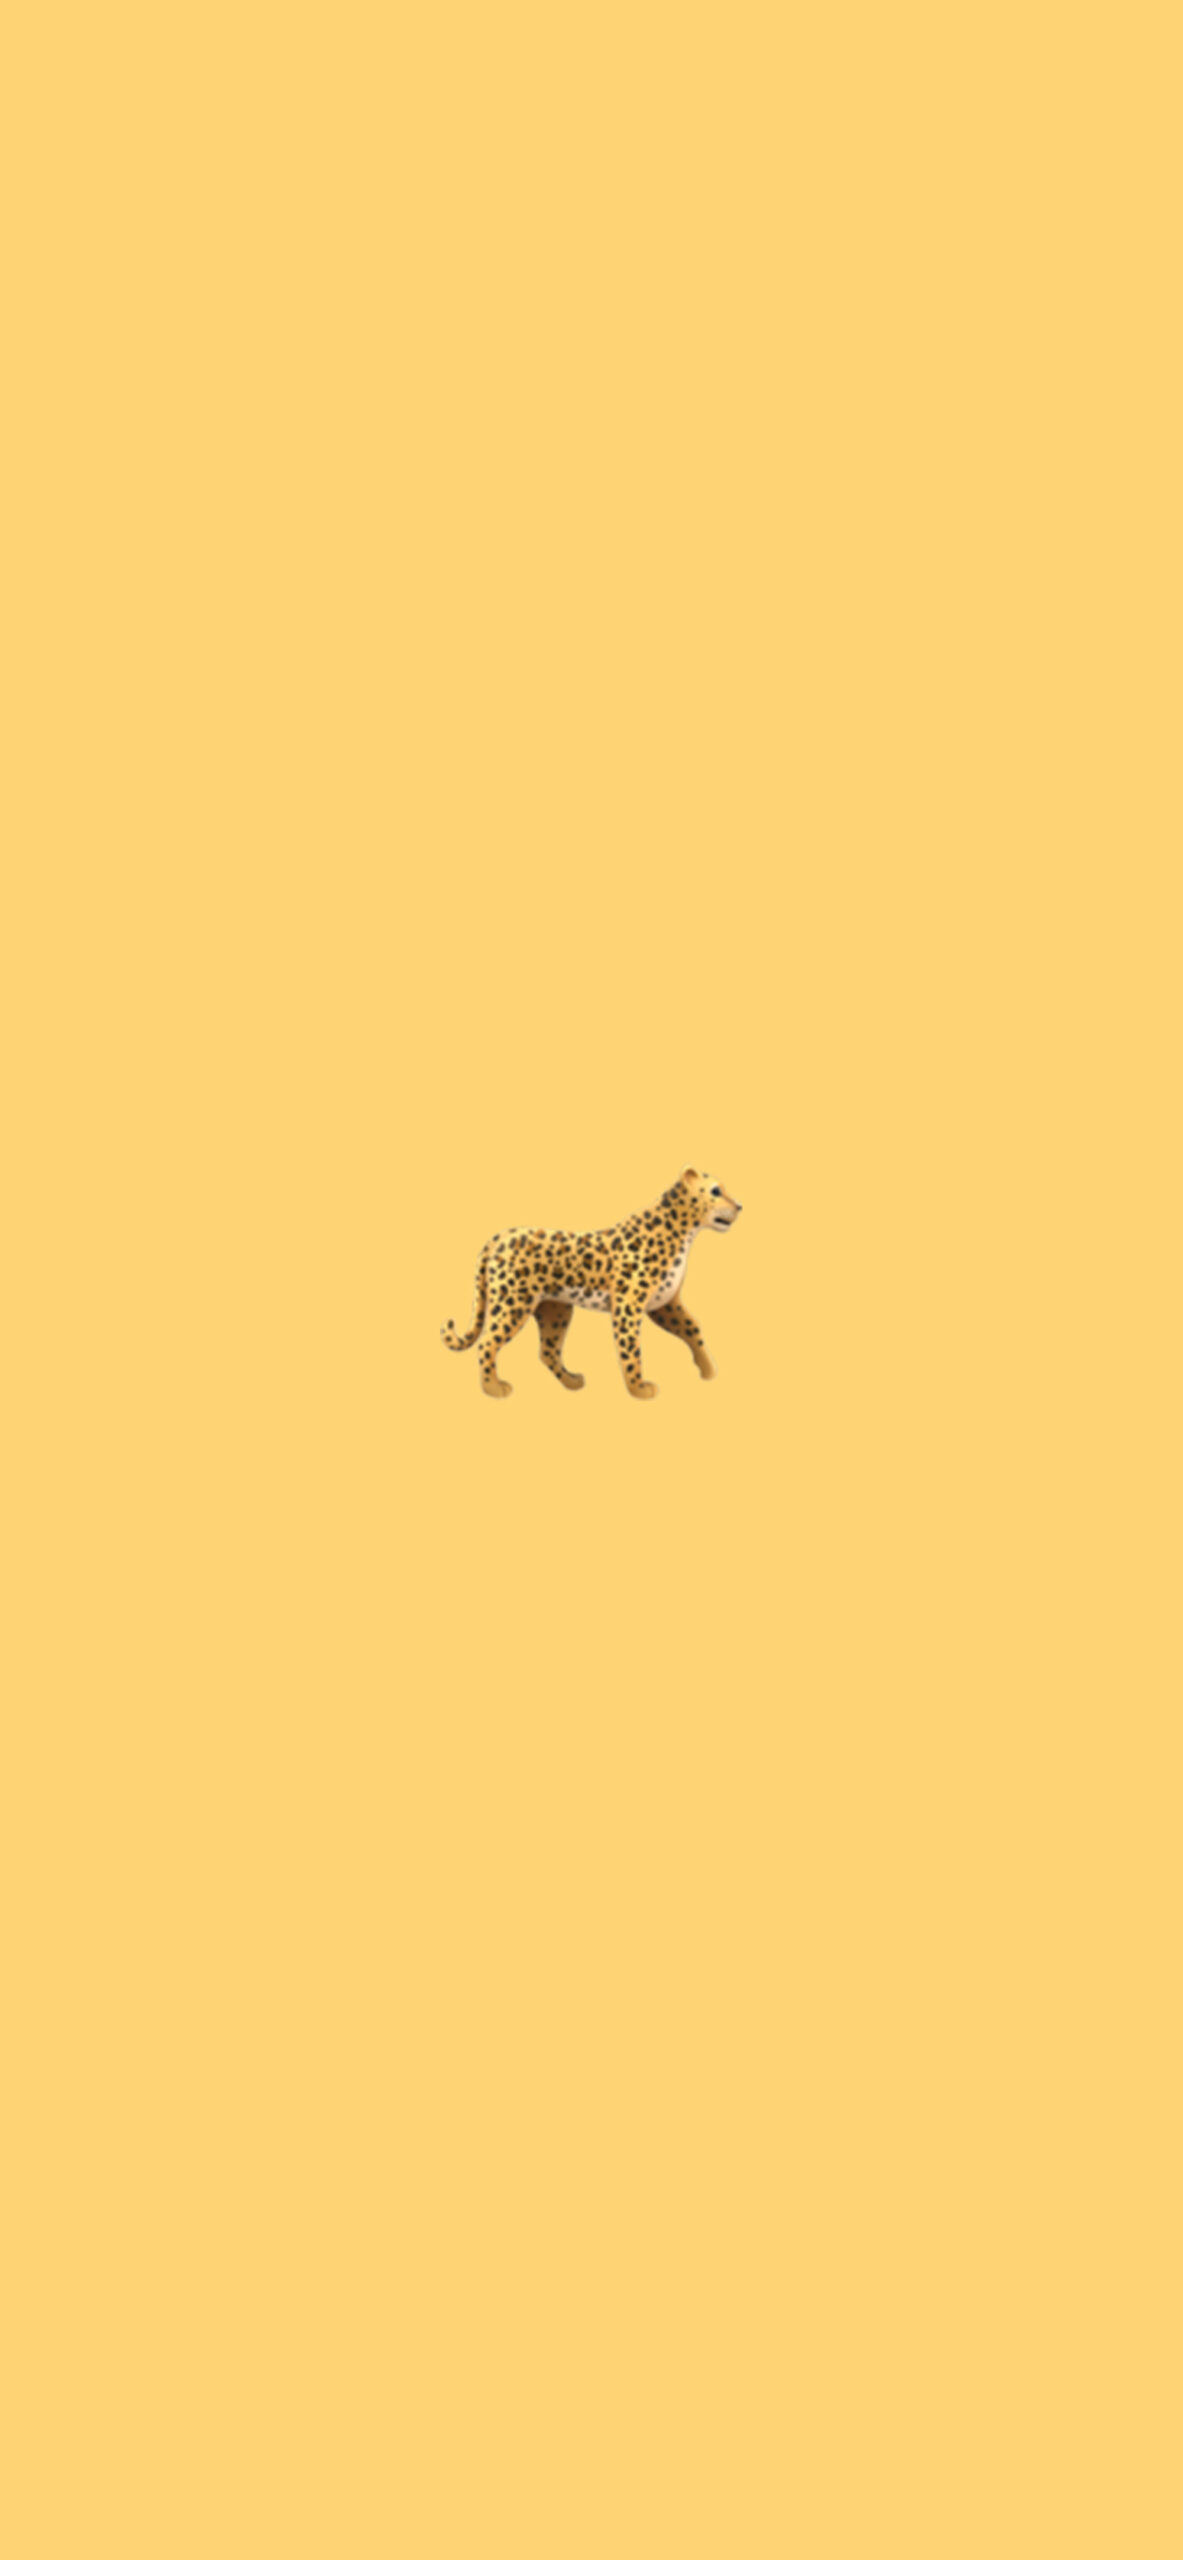 leopard emoji aesthetic wallpaper